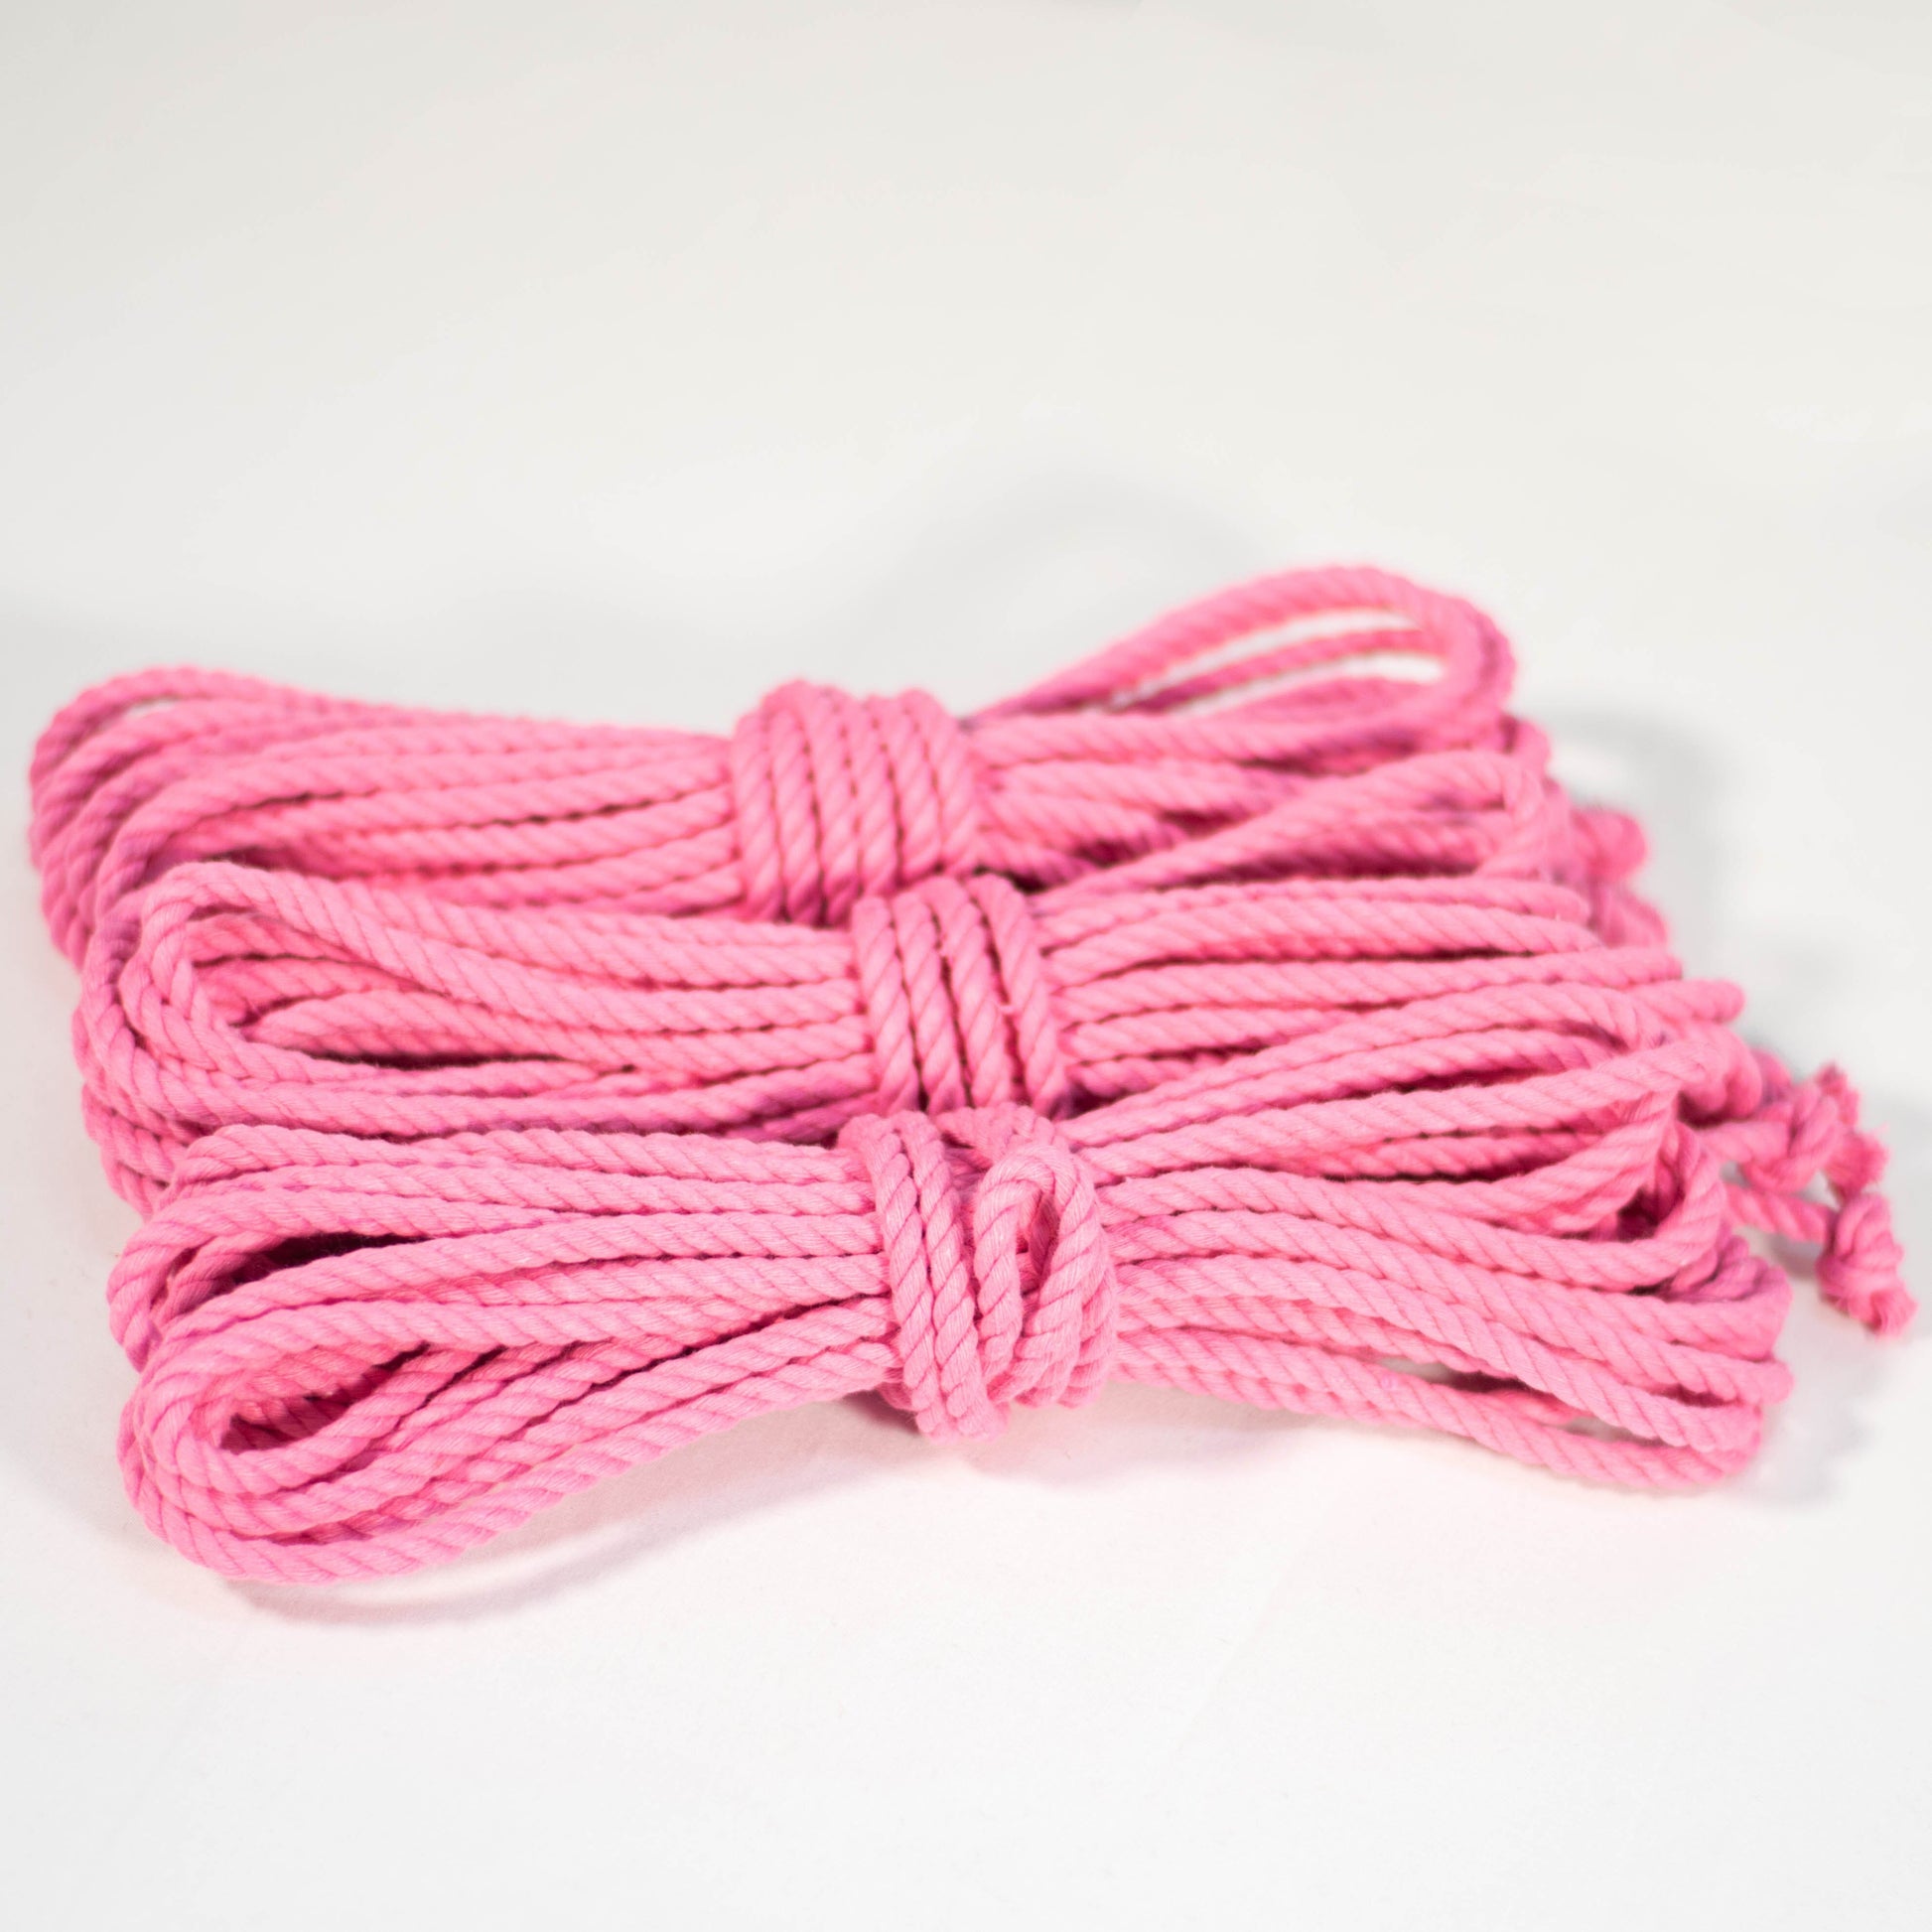 Cotton Play Ropes Shibari Rope Pink Bundle of 3 